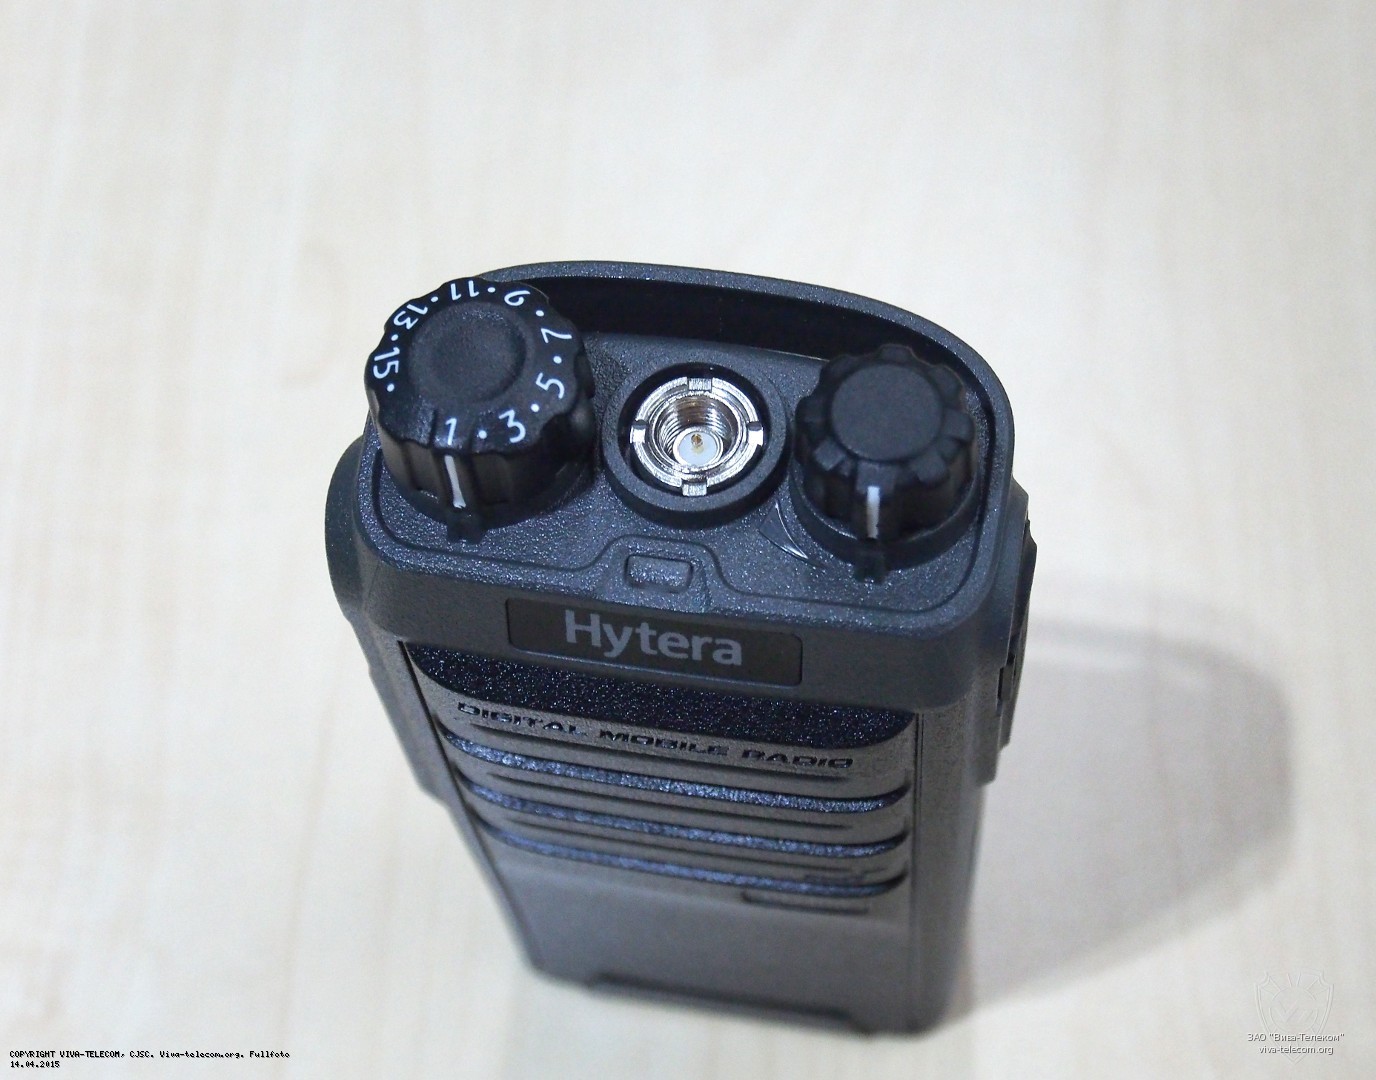   Hytera PD405 